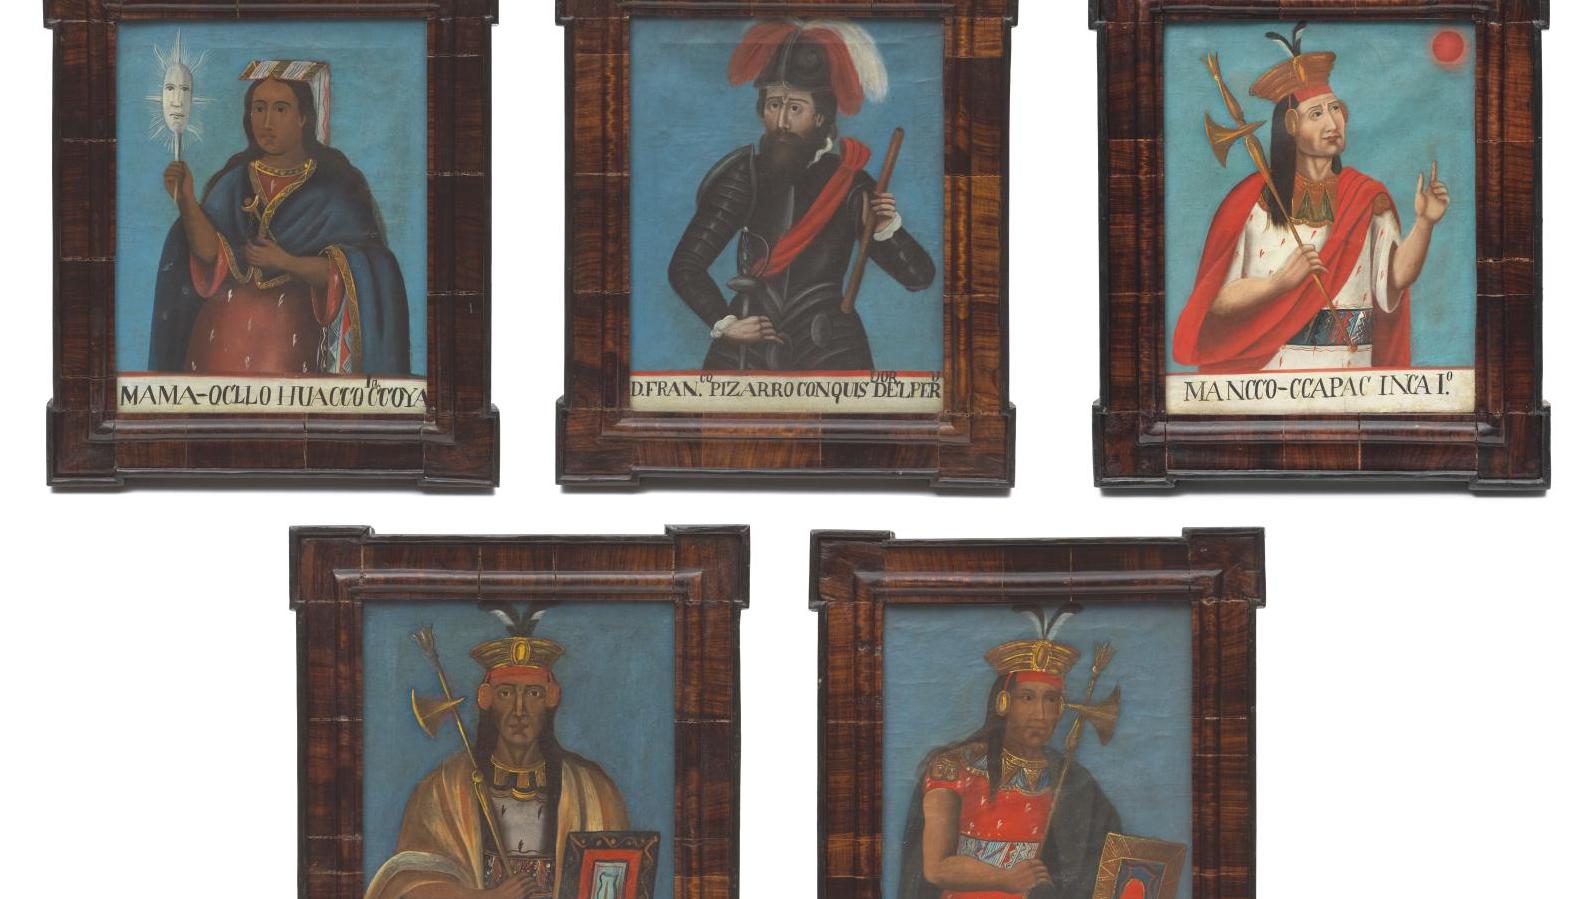 École d’Amérique du Sud (Bolivie-Pérou), début du XIXe siècle. Portraits des empereurs... Les fils du Soleil en compagnie du conquistador Pizarro